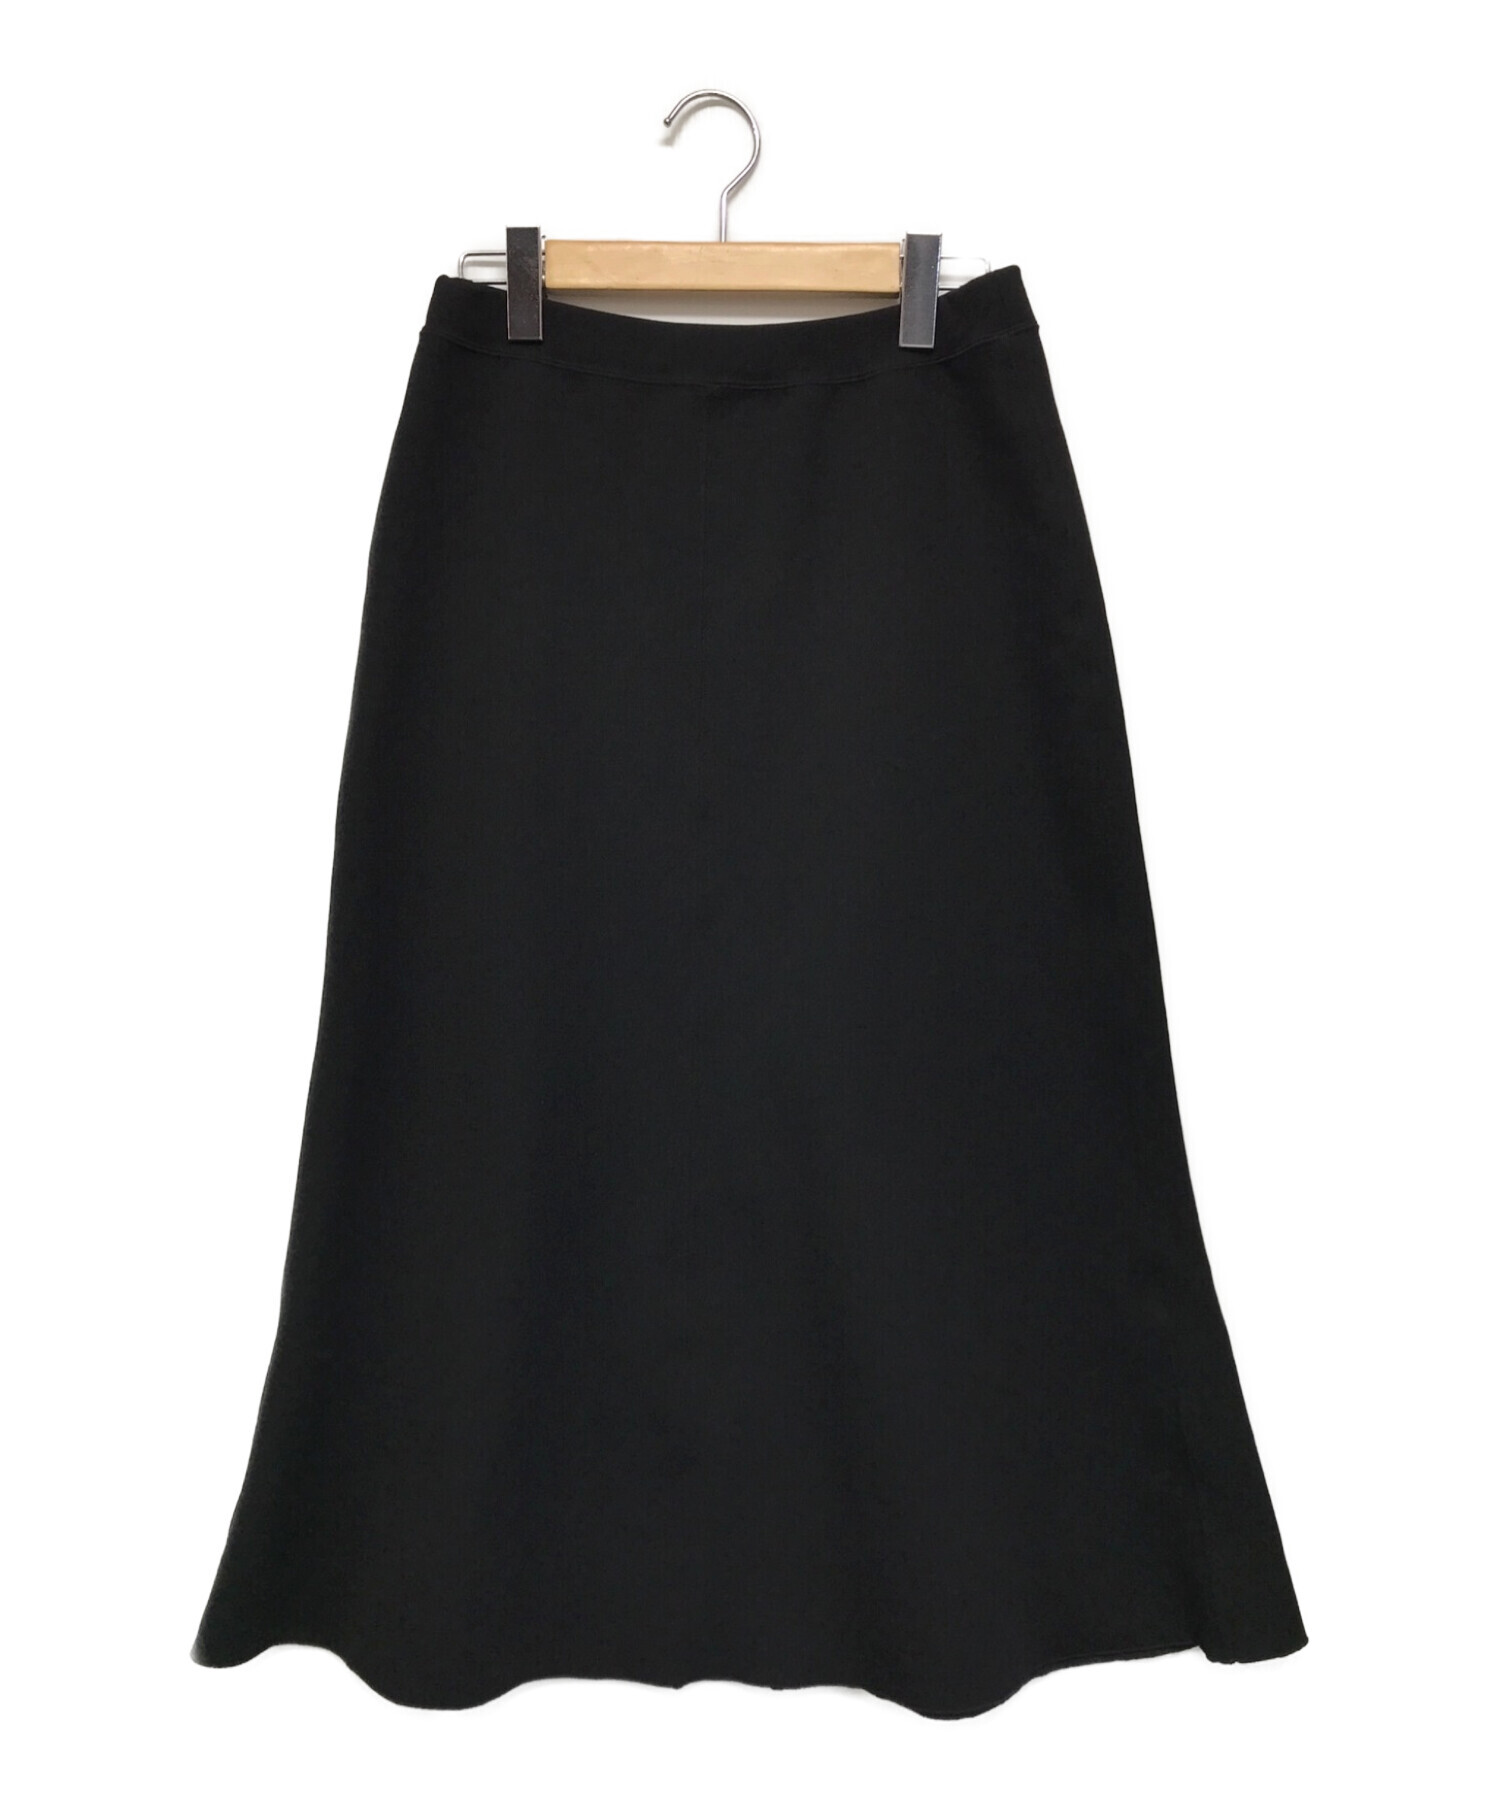 FRAMeWORK (フレームワーク) ダブルフェイスジャージフレアスカート5 ブラック サイズ:SIZE 38